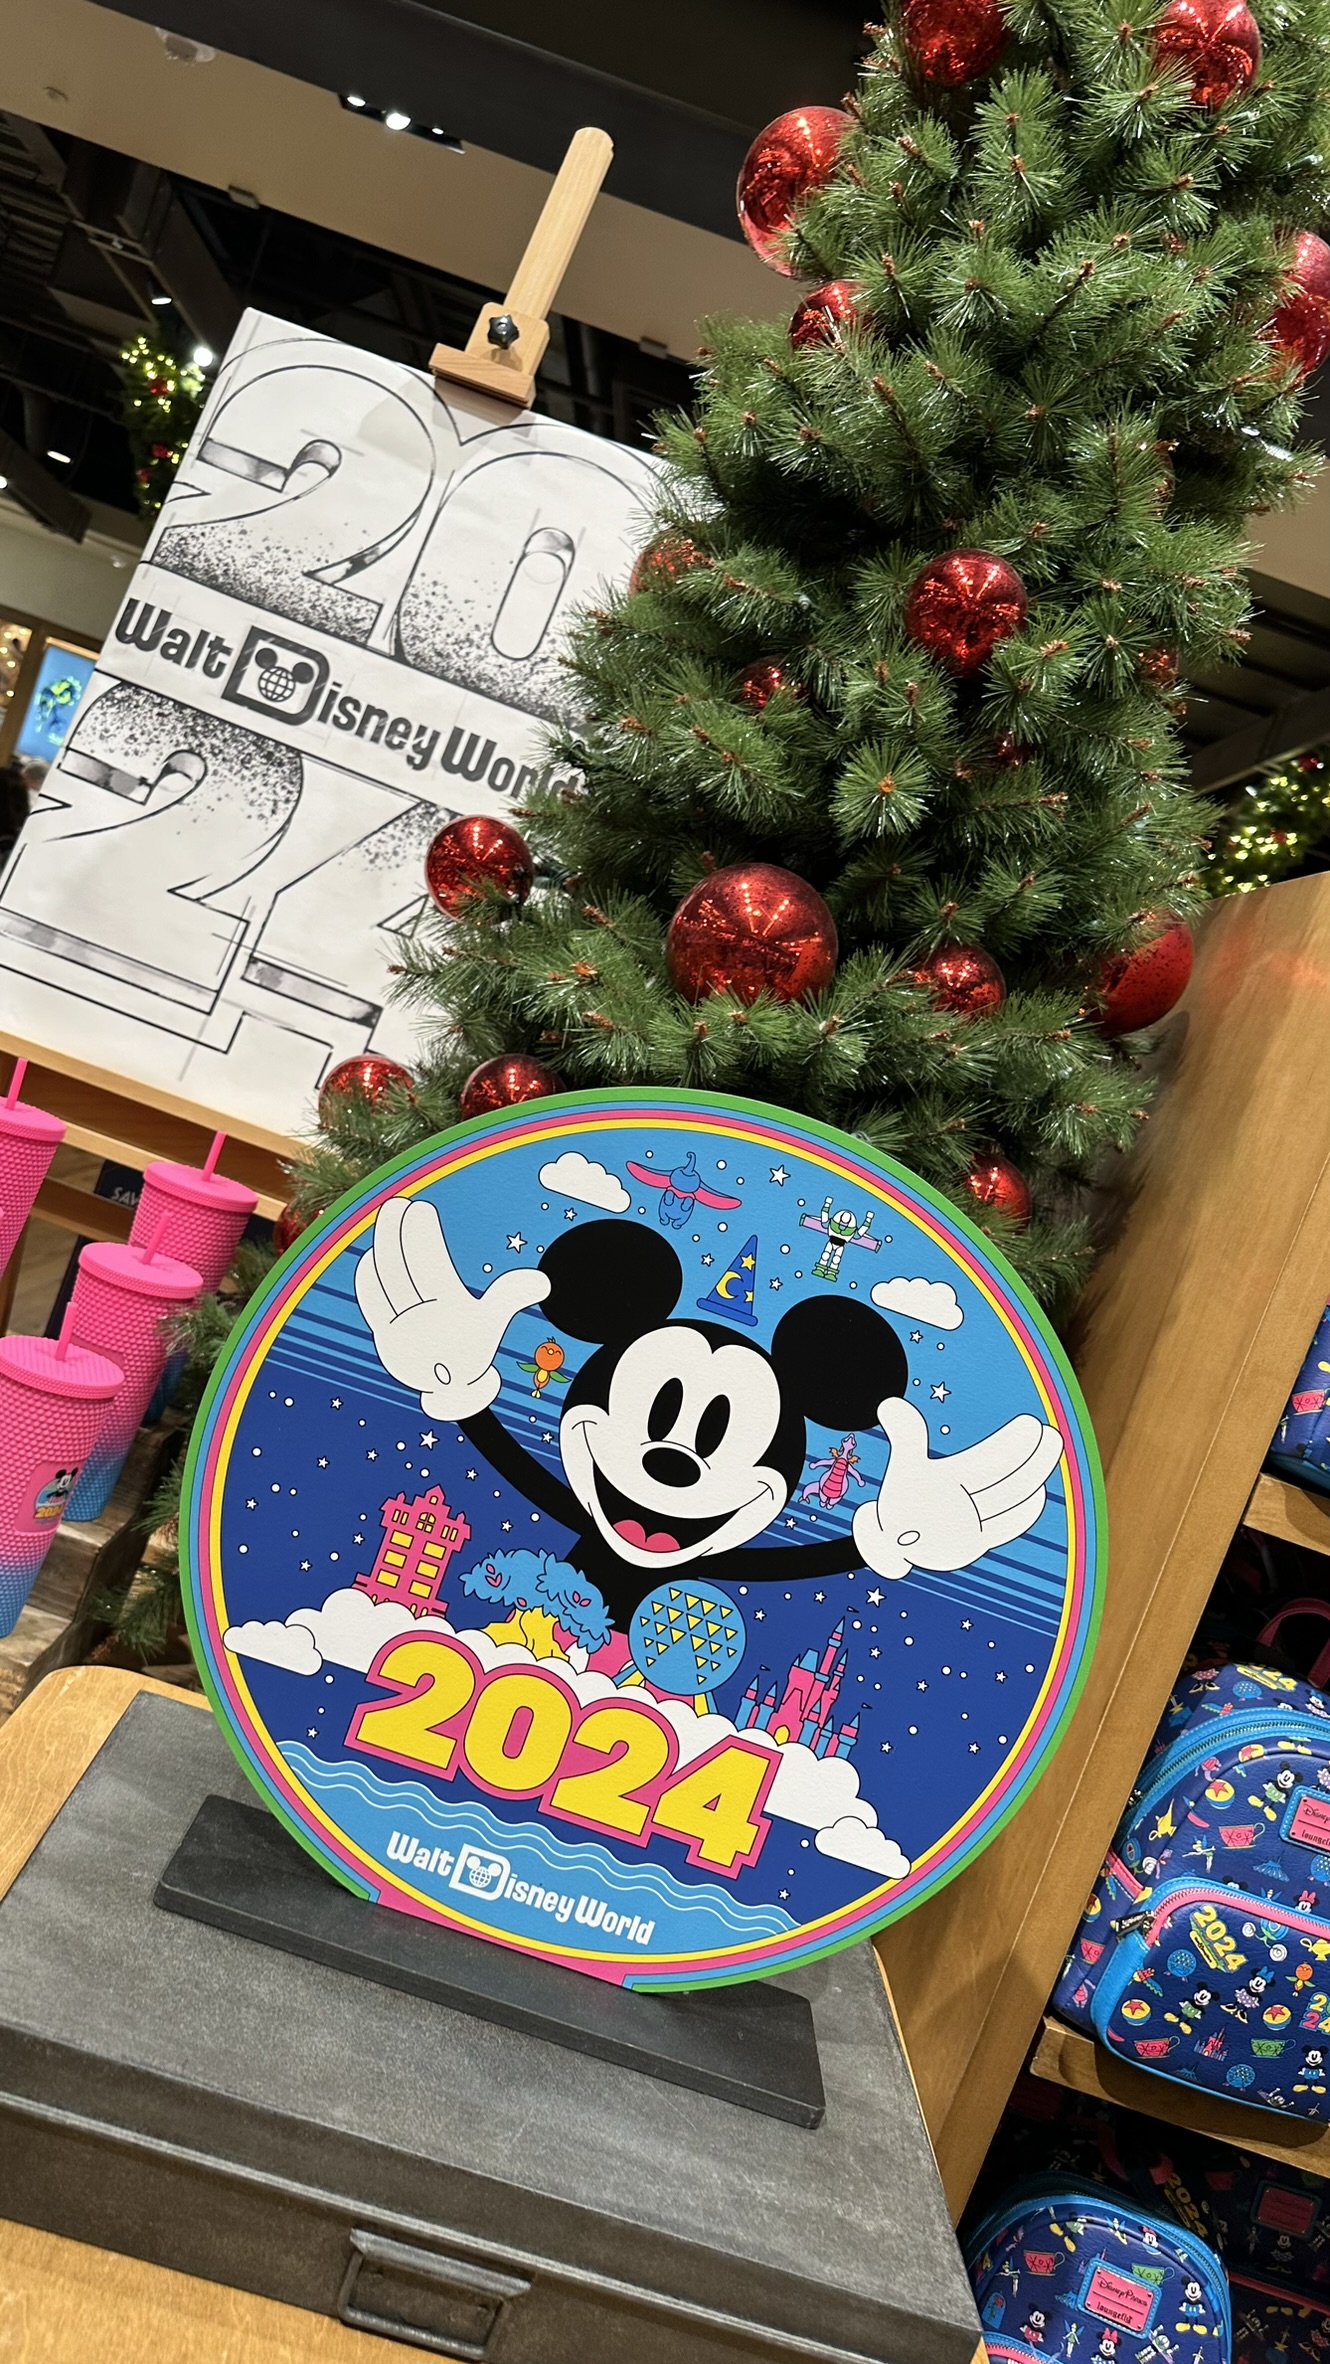 Exclusive 2024 Merchandise Drop at Walt Disney World! ✨🏰